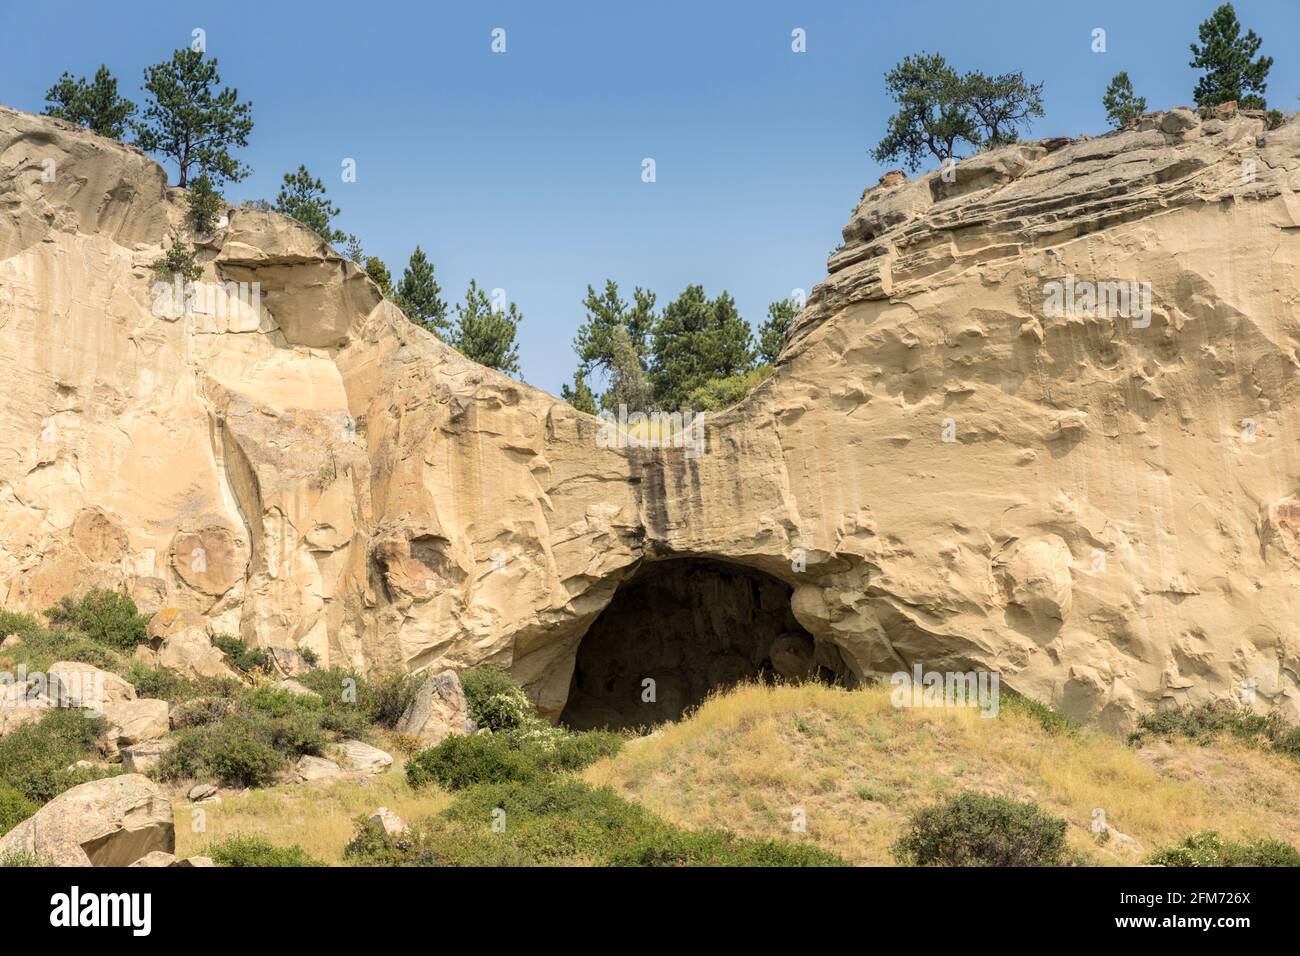 Entrée de la grotte Pictograph, parc national de la grotte Pictograph, Billings, Montana, États-Unis Banque D'Images